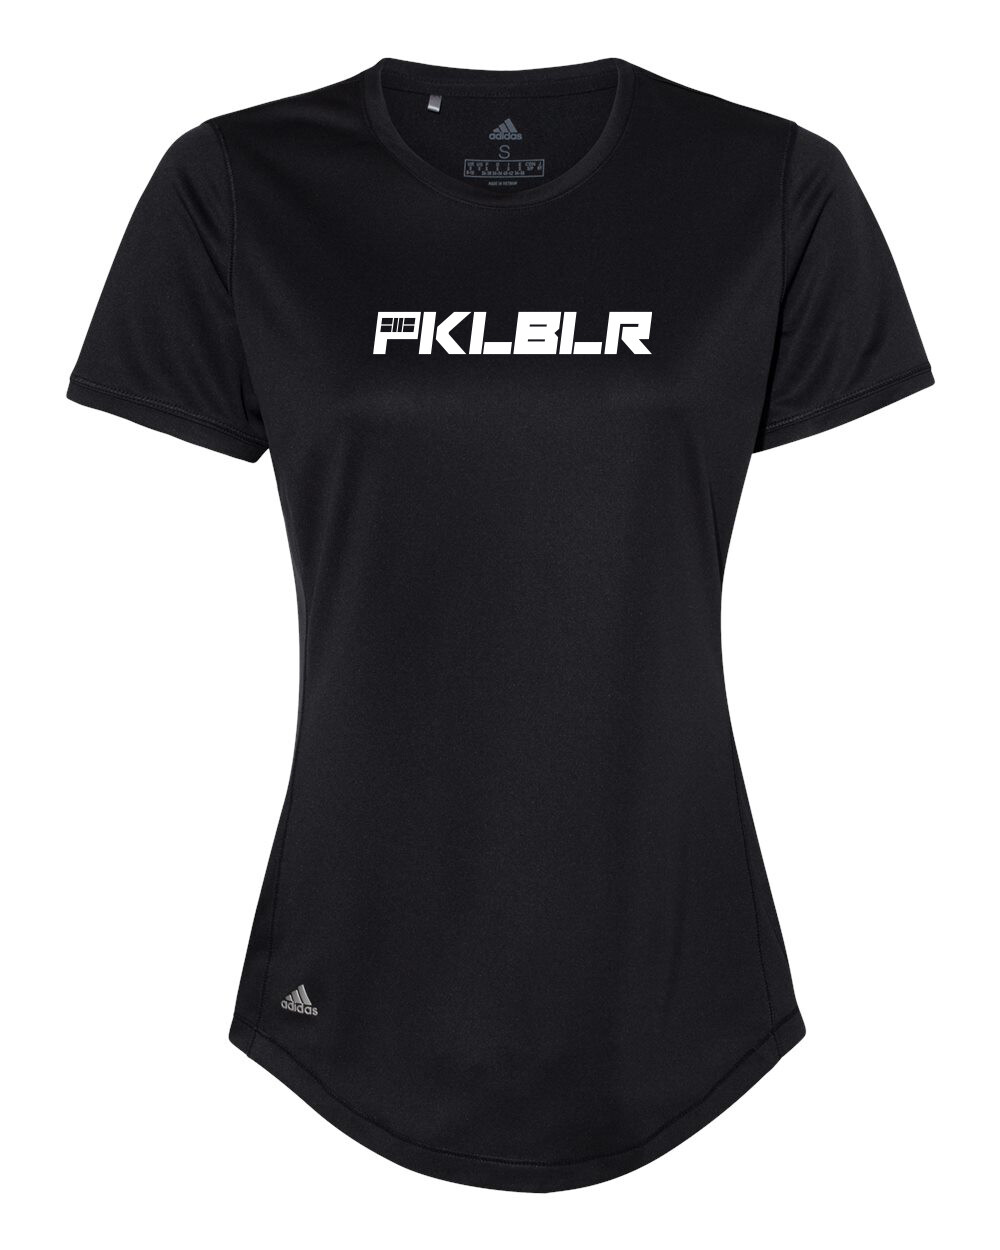 Adidas Women's Pickleball T-Shirt